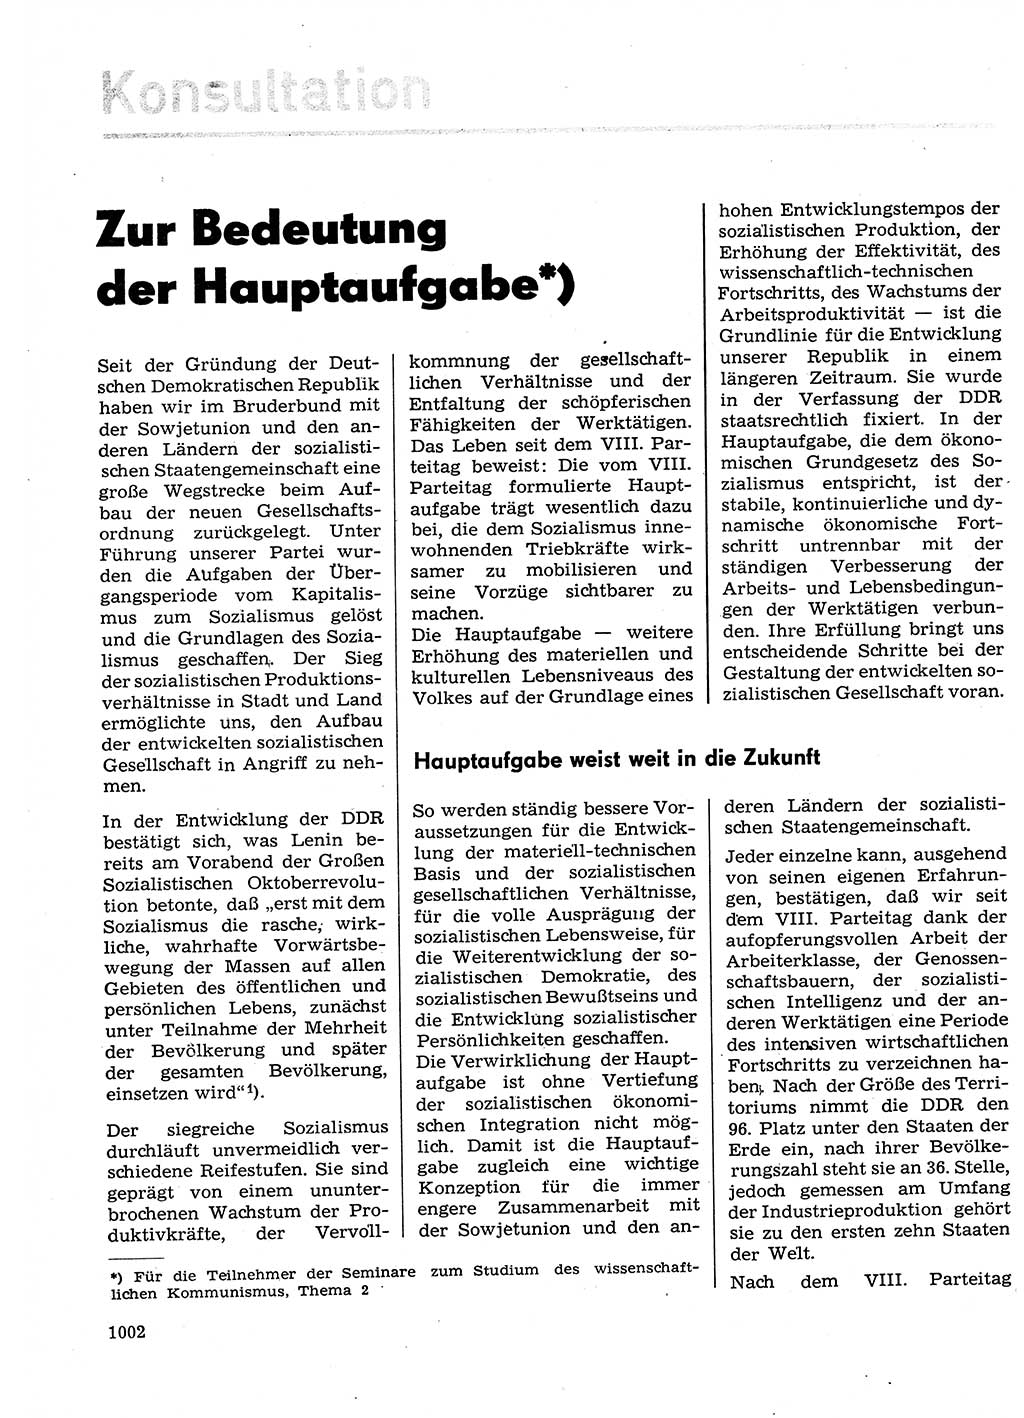 Neuer Weg (NW), Organ des Zentralkomitees (ZK) der SED (Sozialistische Einheitspartei Deutschlands) für Fragen des Parteilebens, 29. Jahrgang [Deutsche Demokratische Republik (DDR)] 1974, Seite 1002 (NW ZK SED DDR 1974, S. 1002)